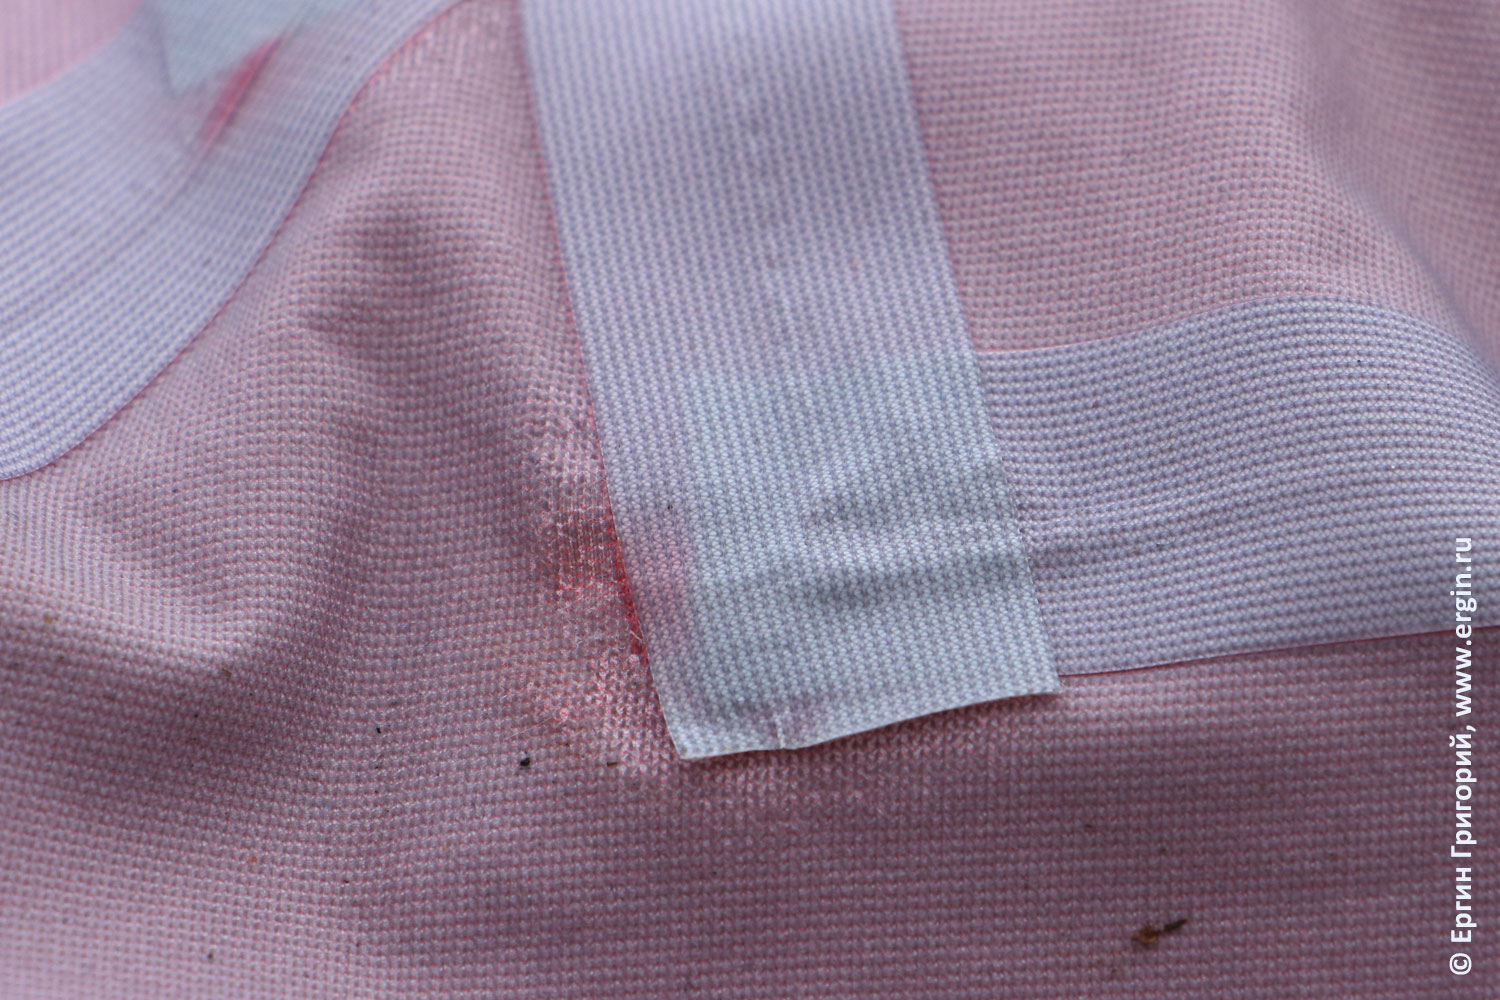 Проблемы проклейки проварки швов на мембранной ткани у сухого герметичного костюма каякера